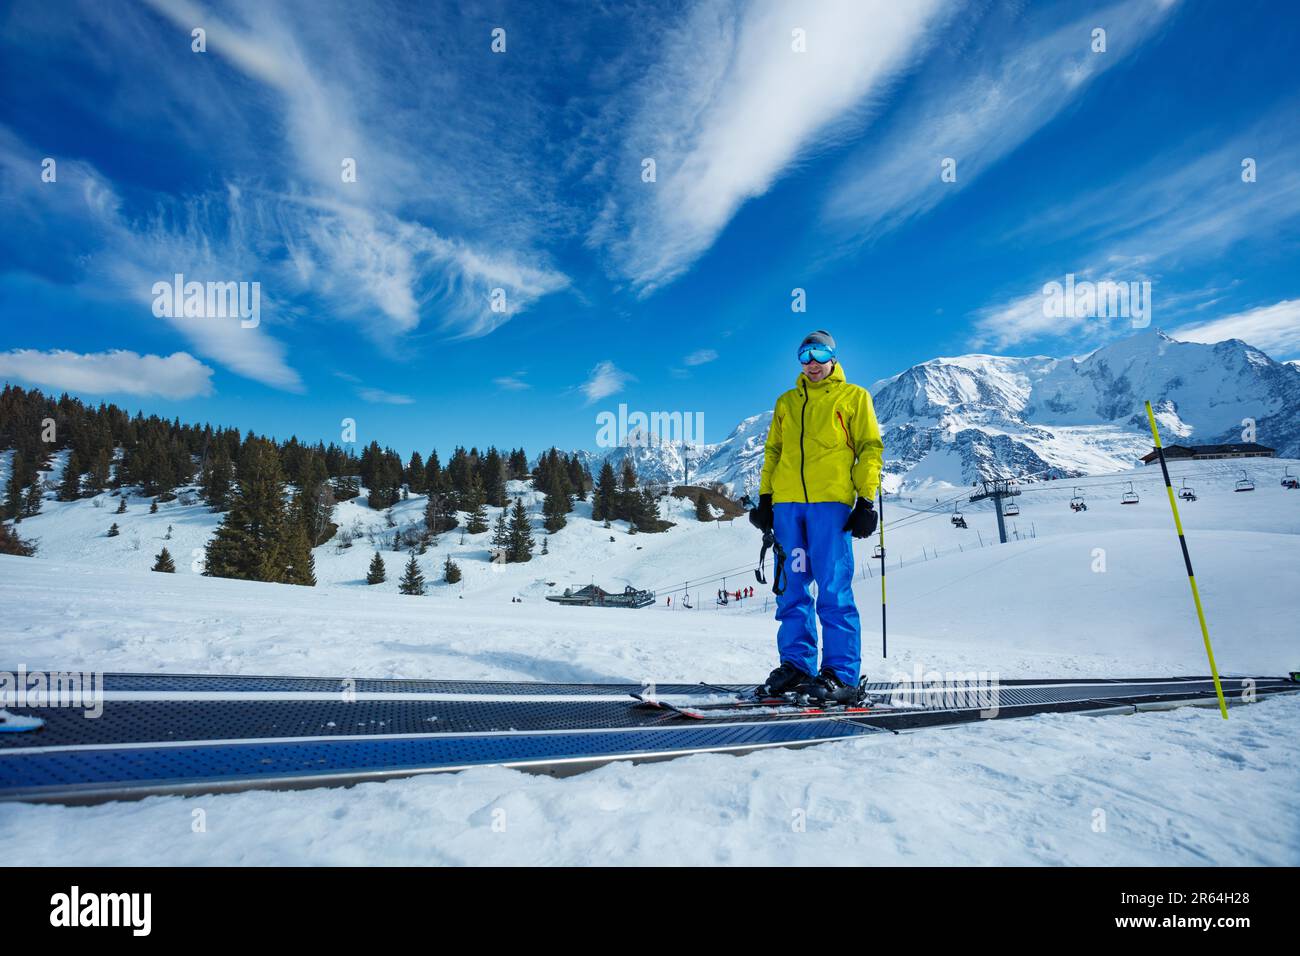 Man on moving walkway at mountain alpine ski resort Stock Photo